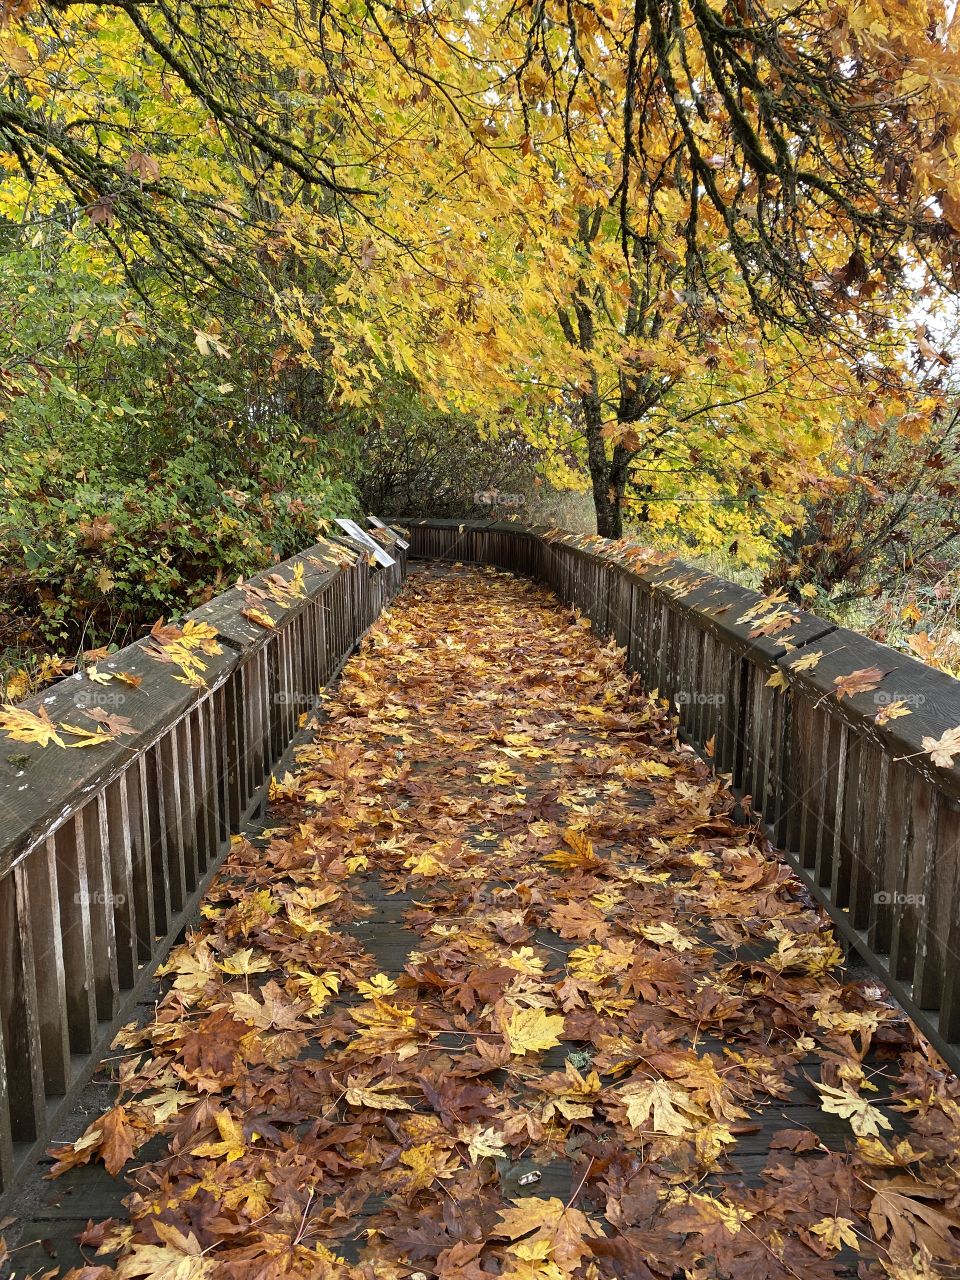 Lovely autumn walk